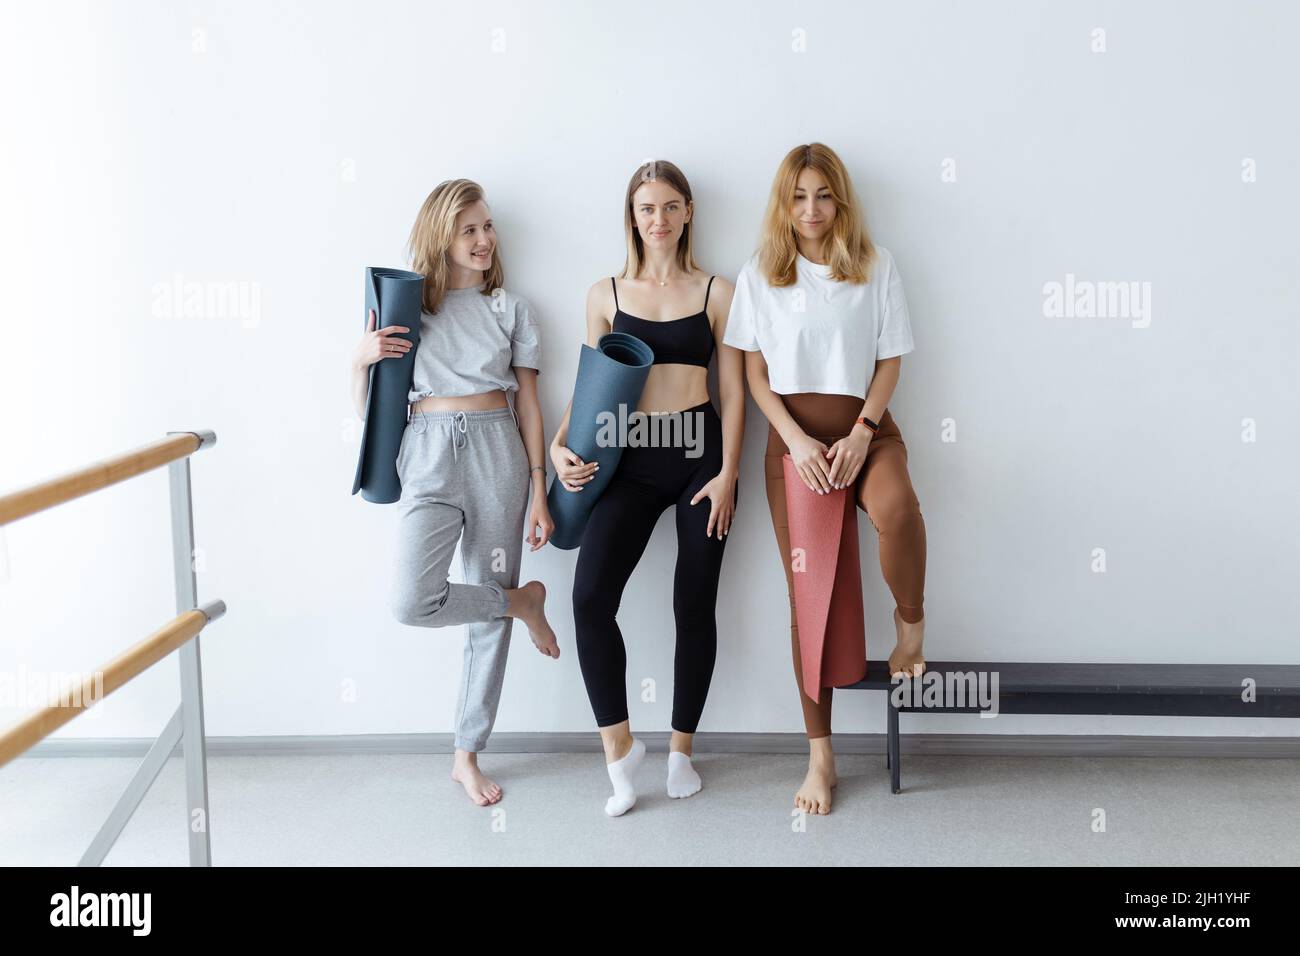 Eine Gruppe junger Sportmädchen mit Yogamatten, die an einer weißen Wand stehen. Freundinnen im Fitnessstudio, die sich nach dem Fitness- oder Yoga-Training drinnen entspannen Stockfoto